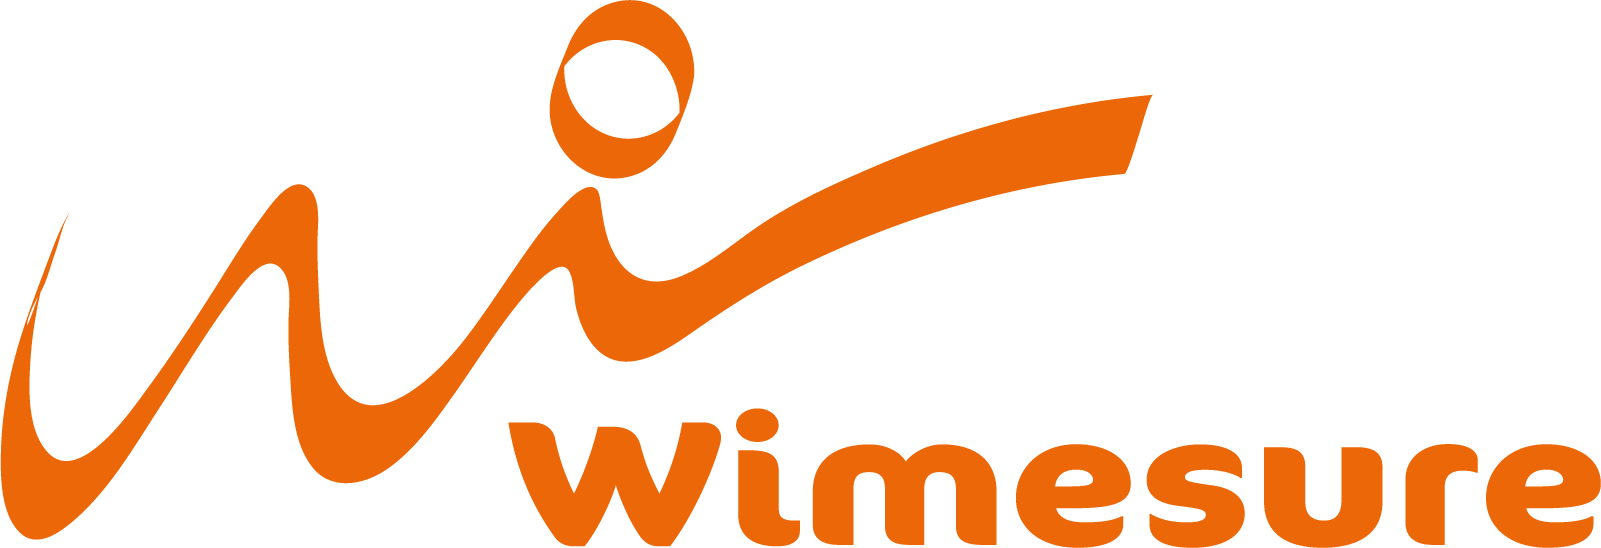 wimesure-orange